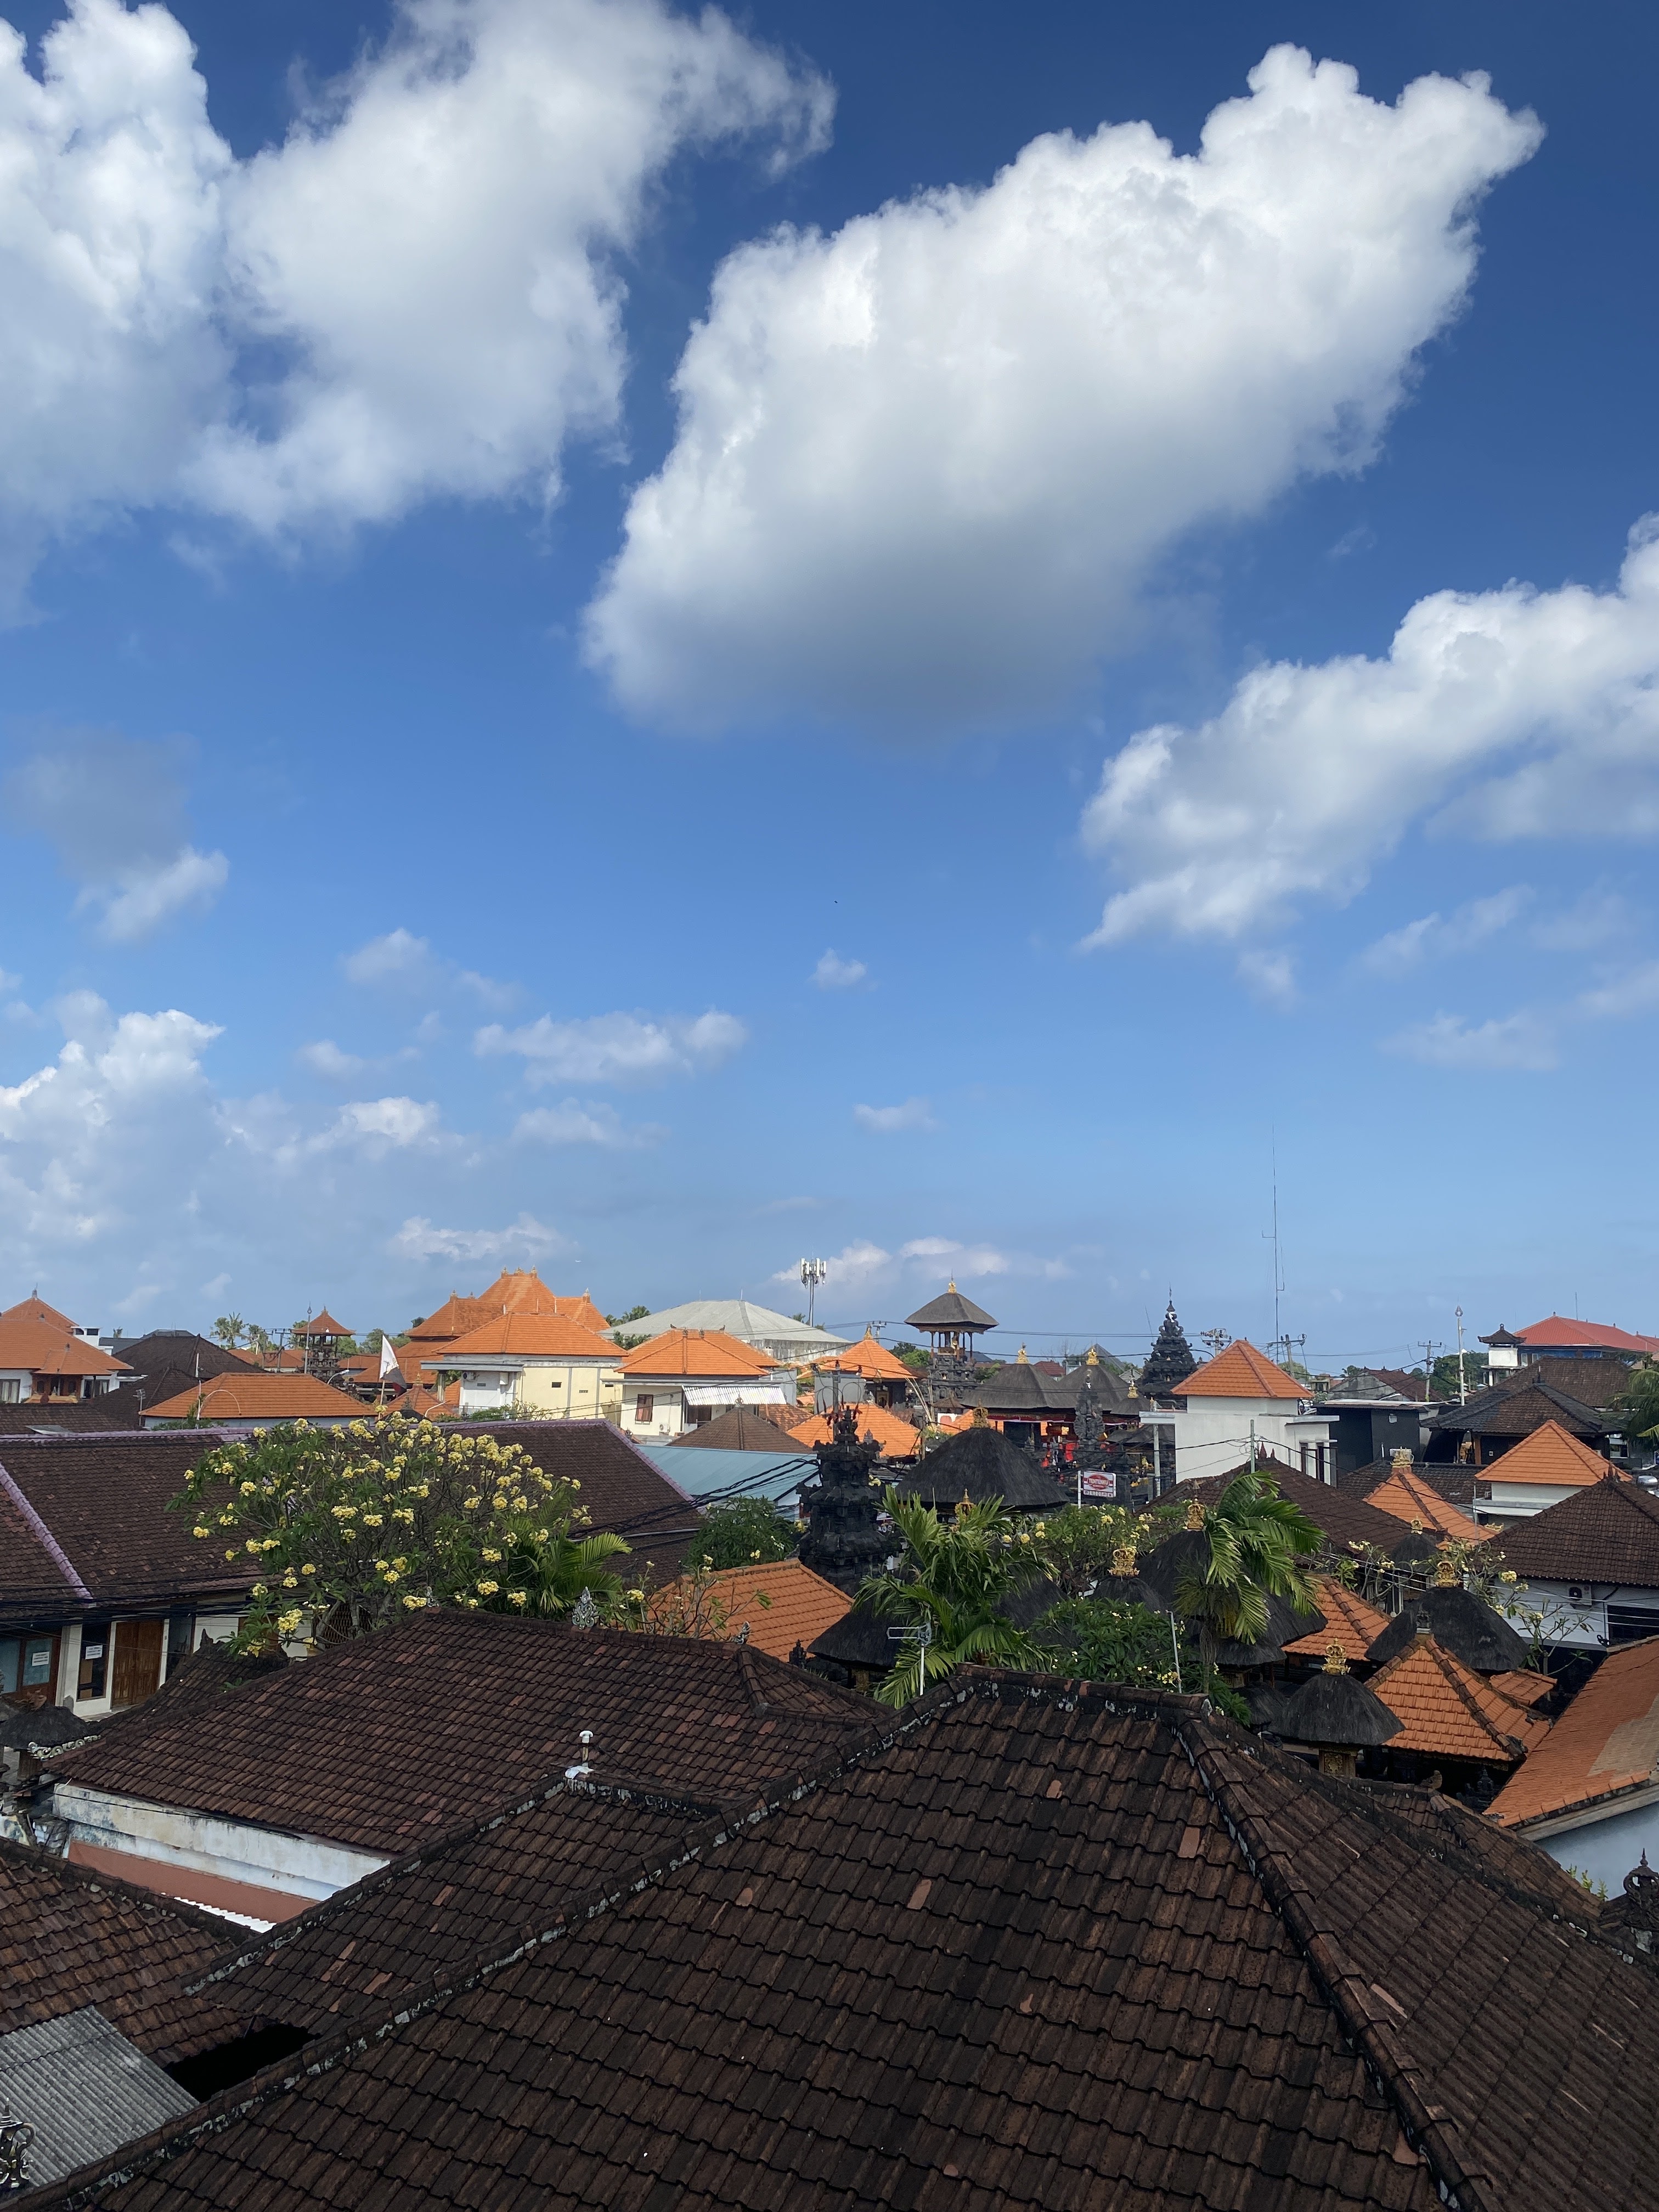 The Aswana Seminyak Bali